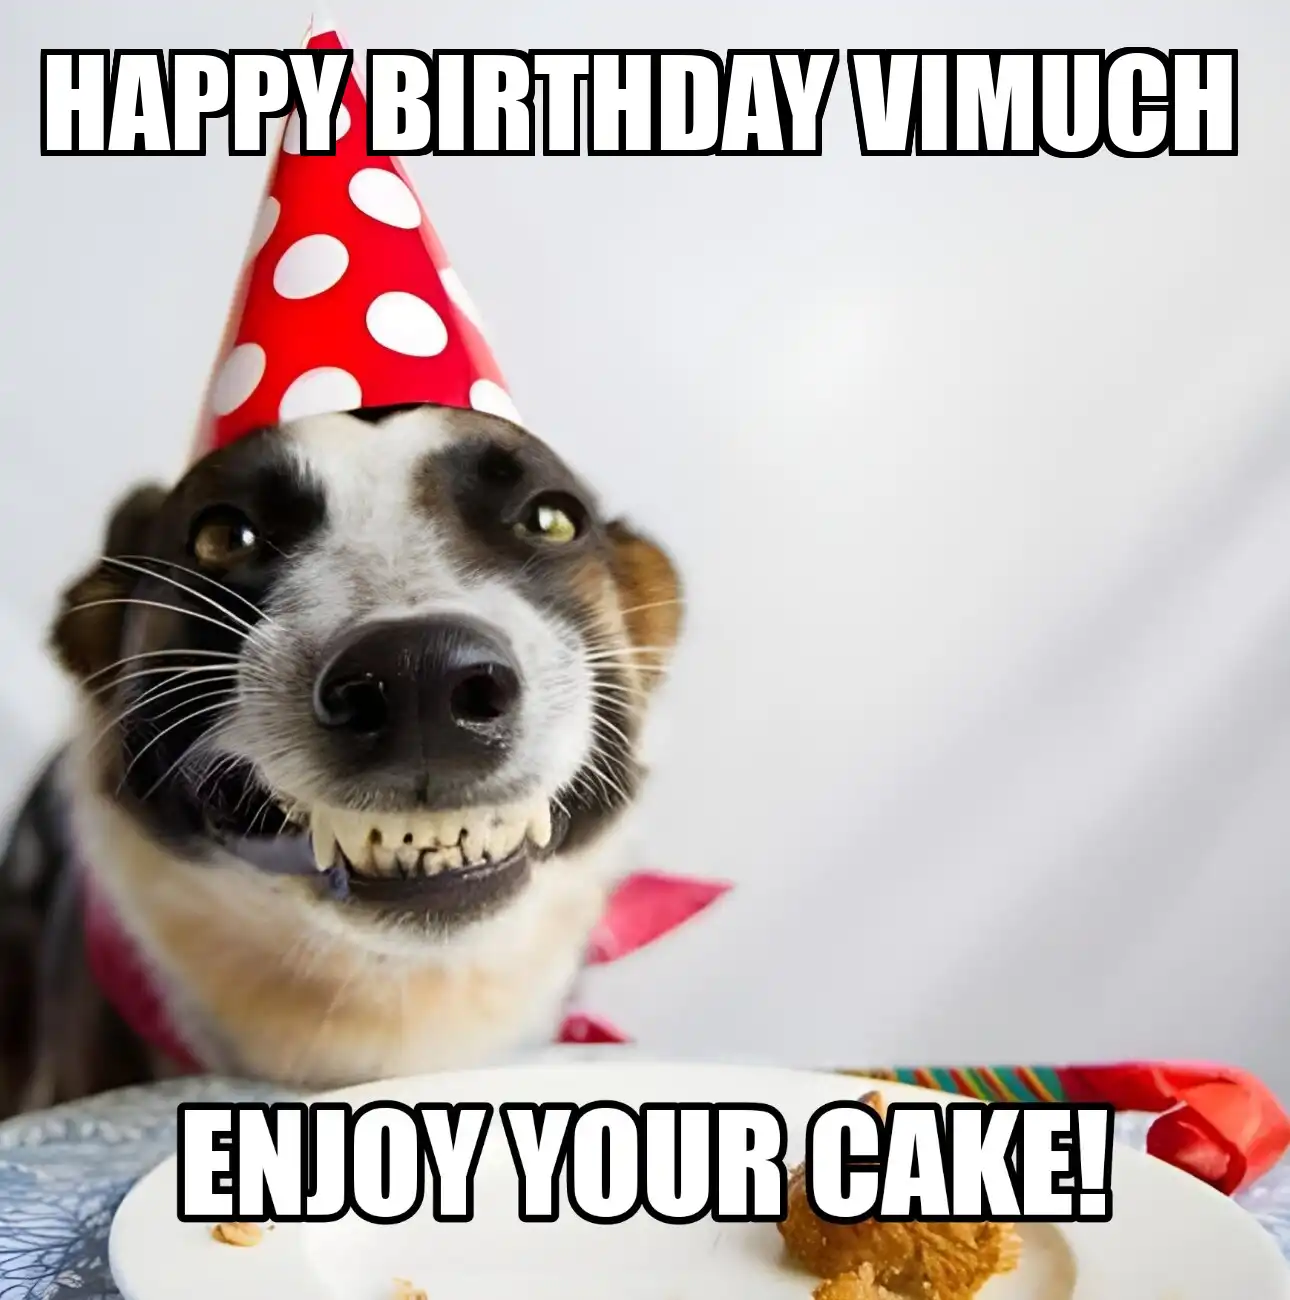 Happy Birthday Vimuch Enjoy Your Cake Dog Meme